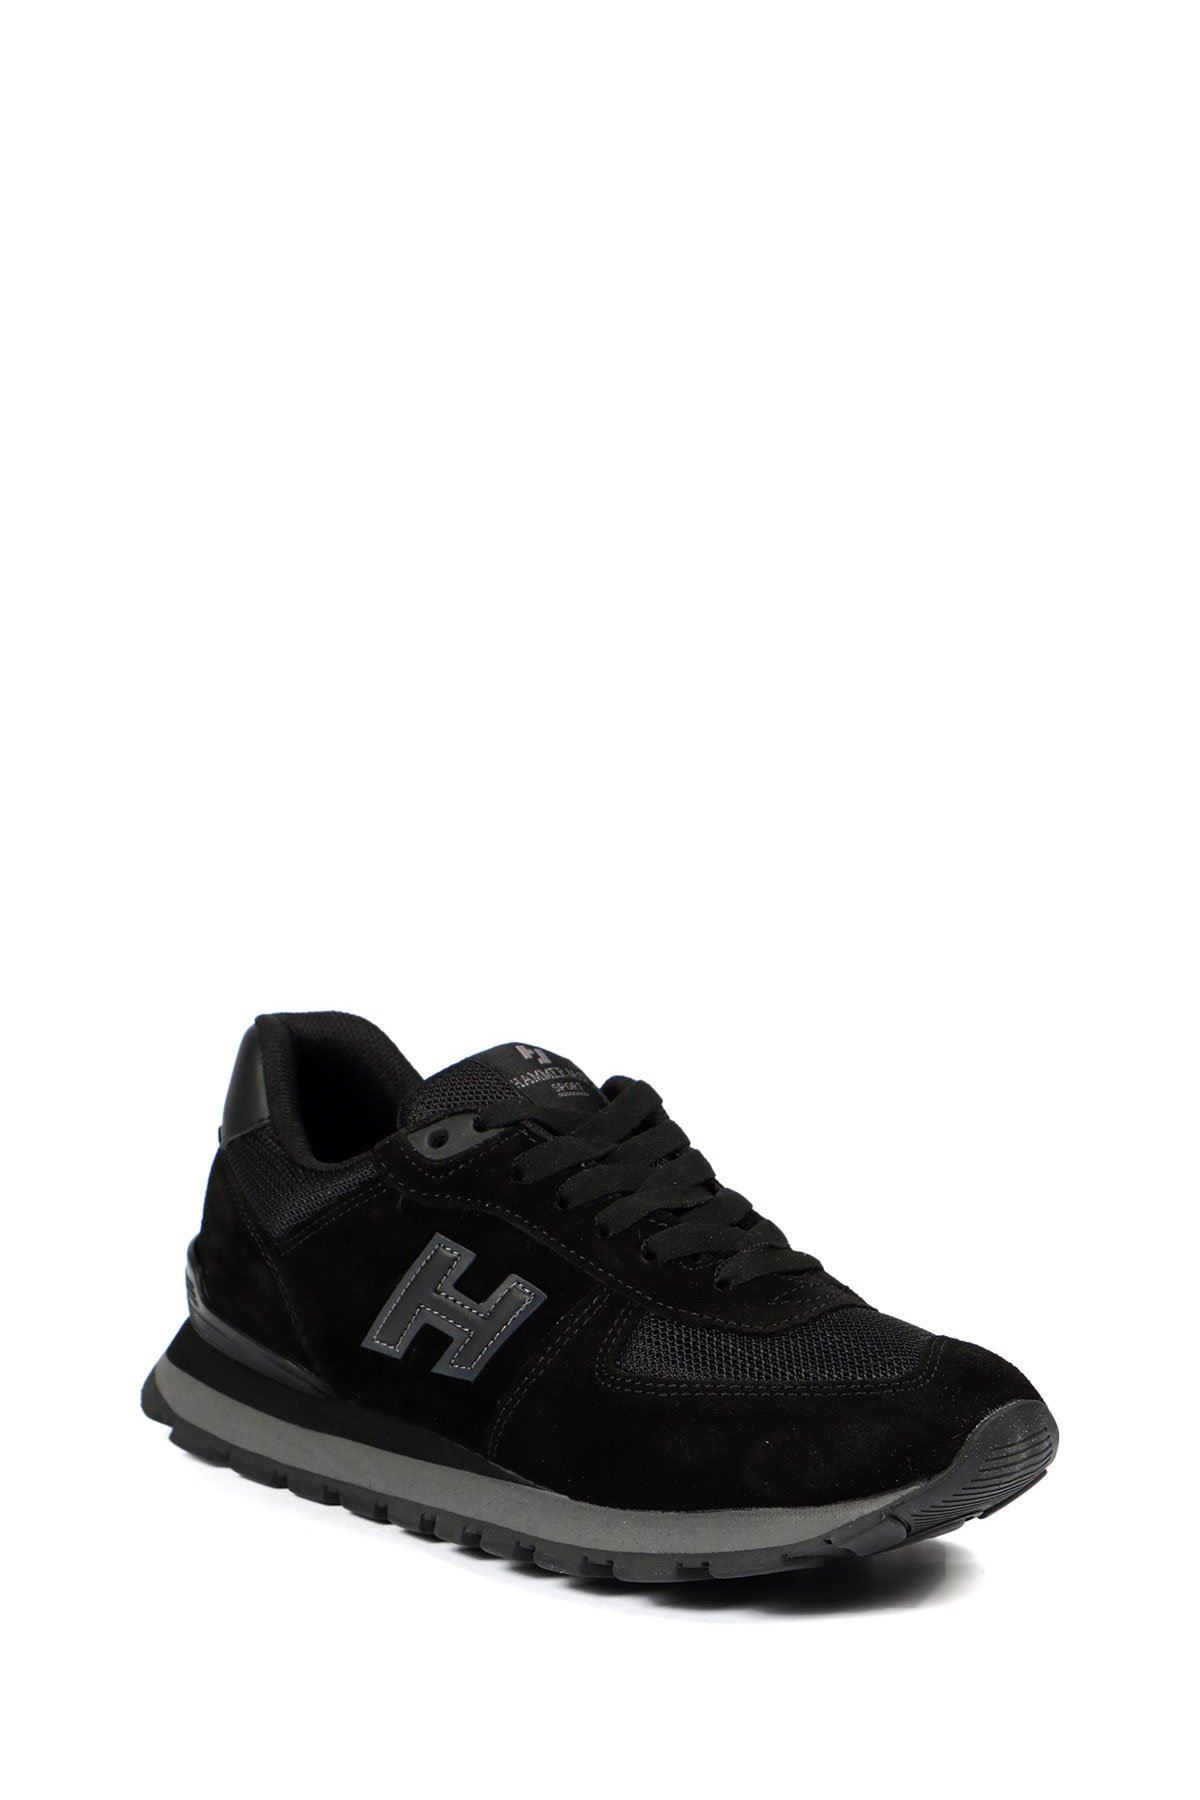 Hammer Jack Peru Kadın Spor Ayakkabı - Siyah Füme